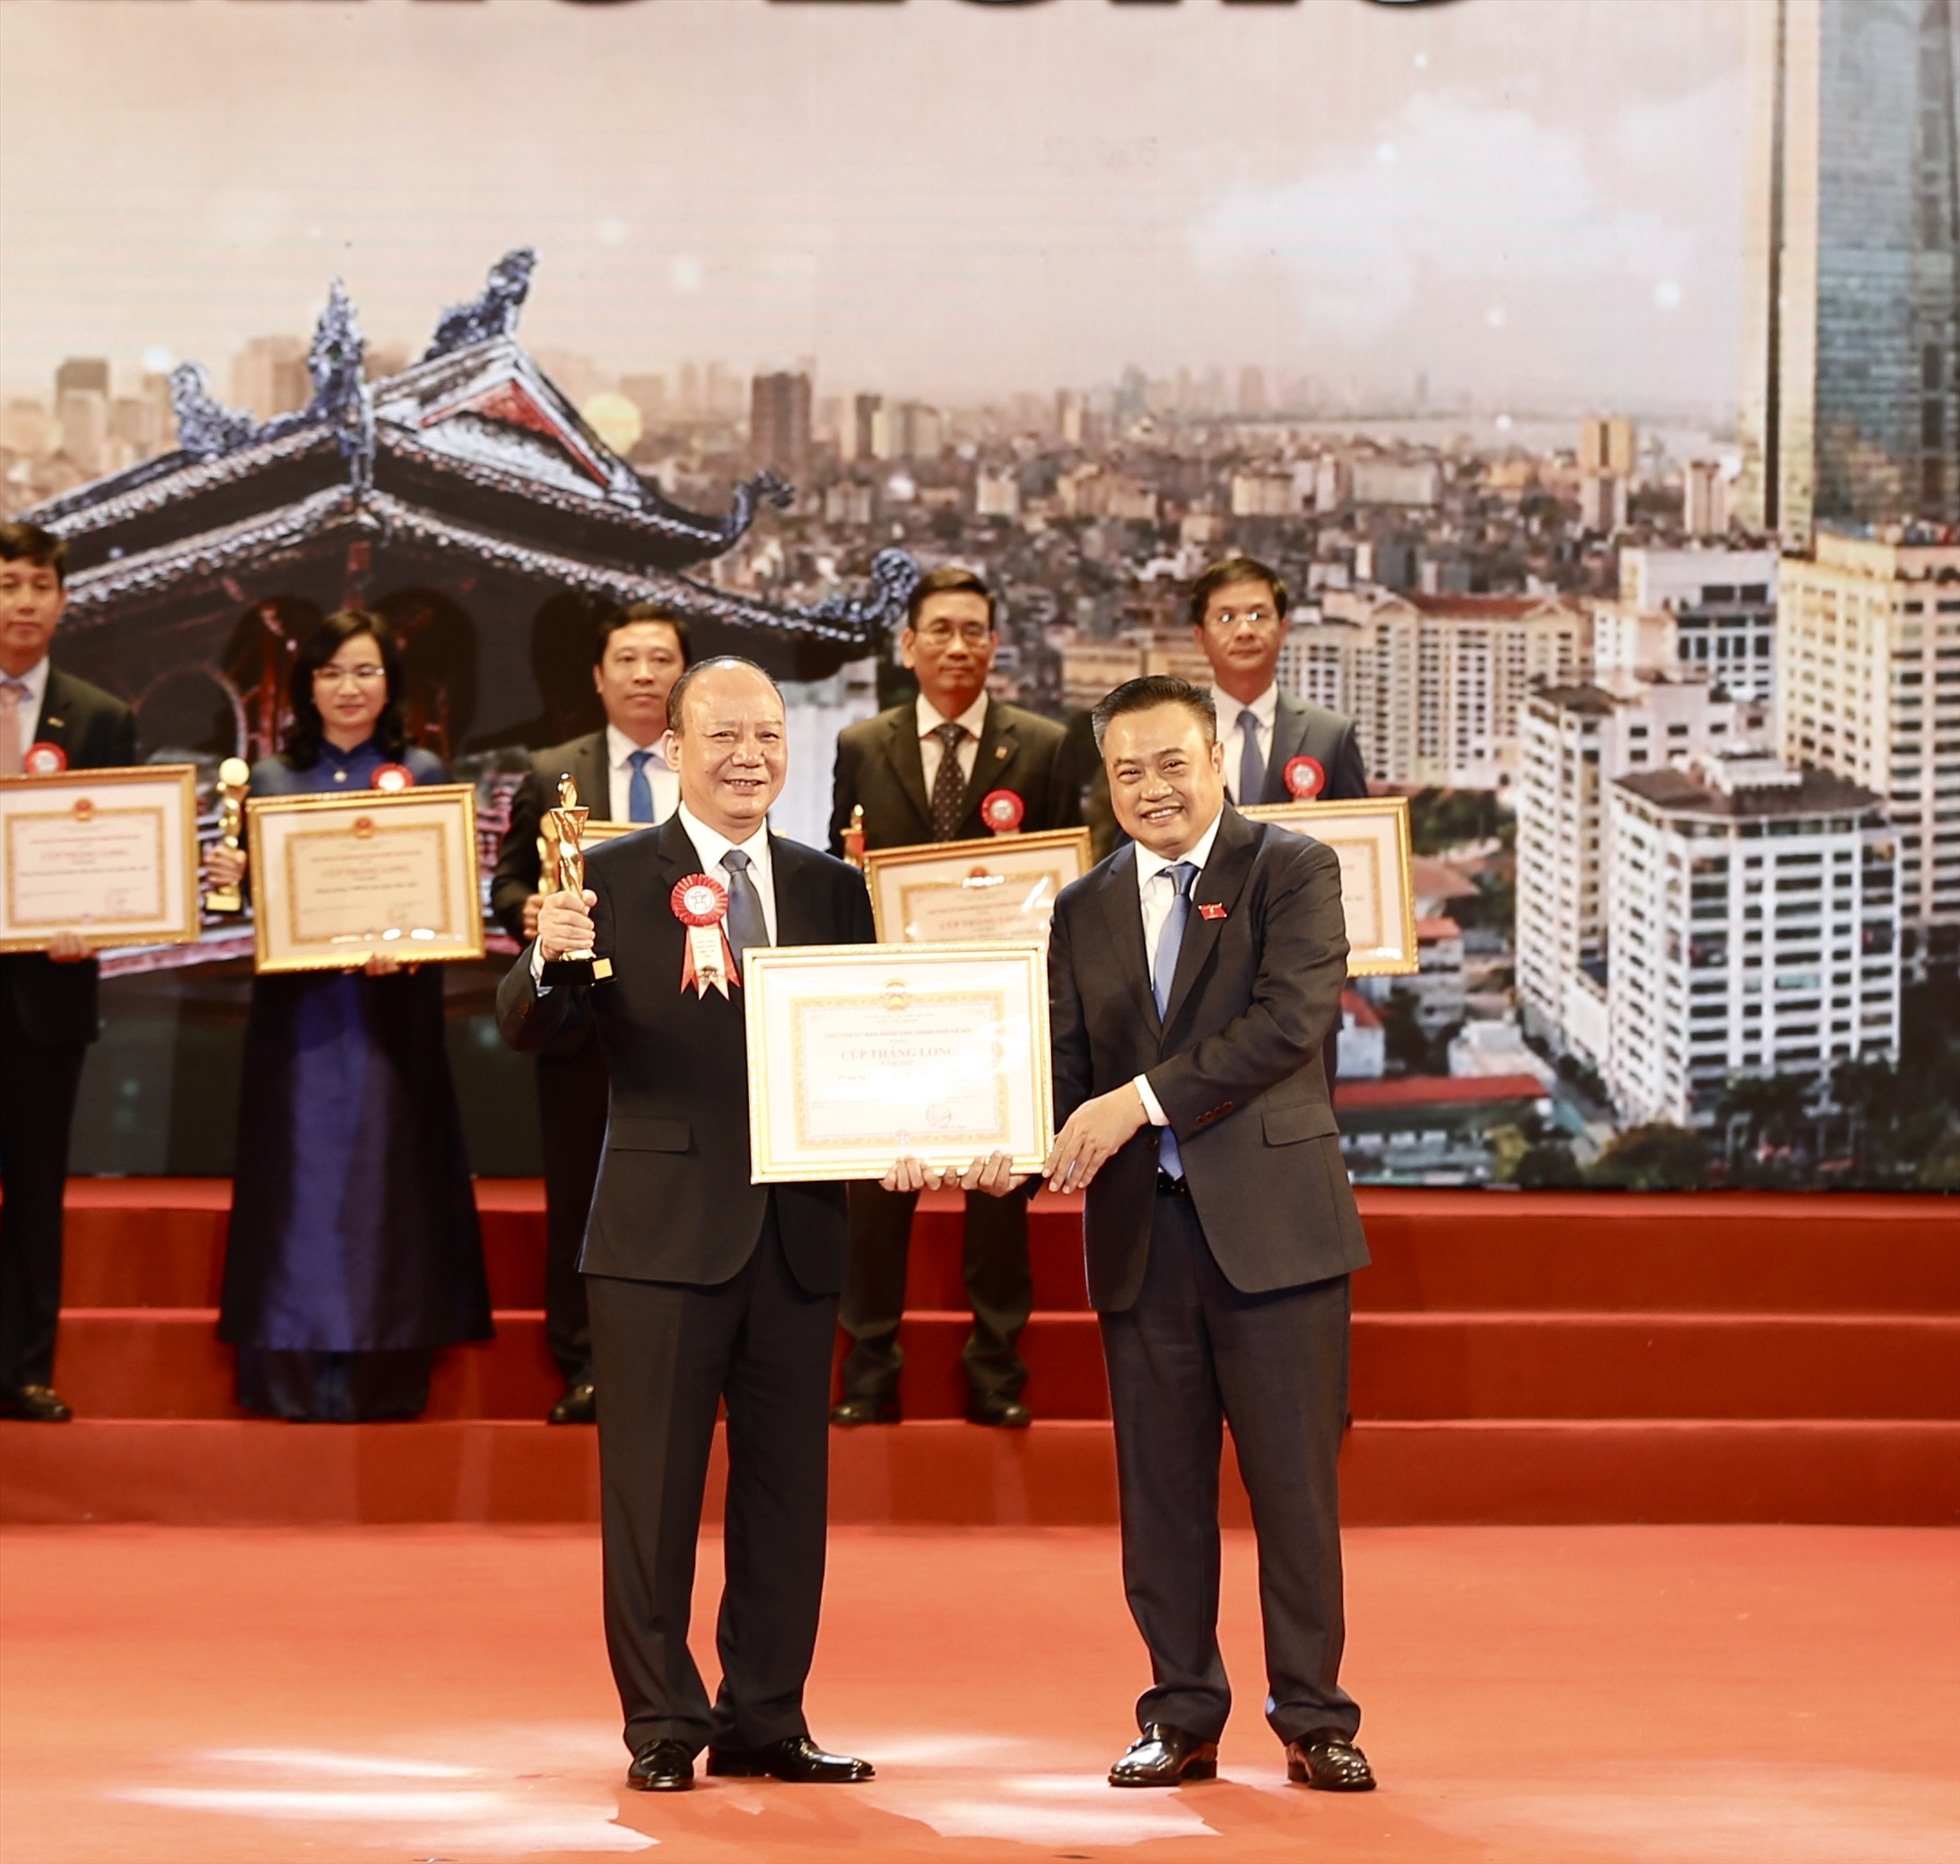 Ông Nguyễn Tất Thắng, Chủ tịch HĐQT Tập đoàn T&T Group đại diện doanh nghiệp lên nhận Cúp Thăng Long của lãnh đạo UBND thành phố Hà Nội trao tặng.